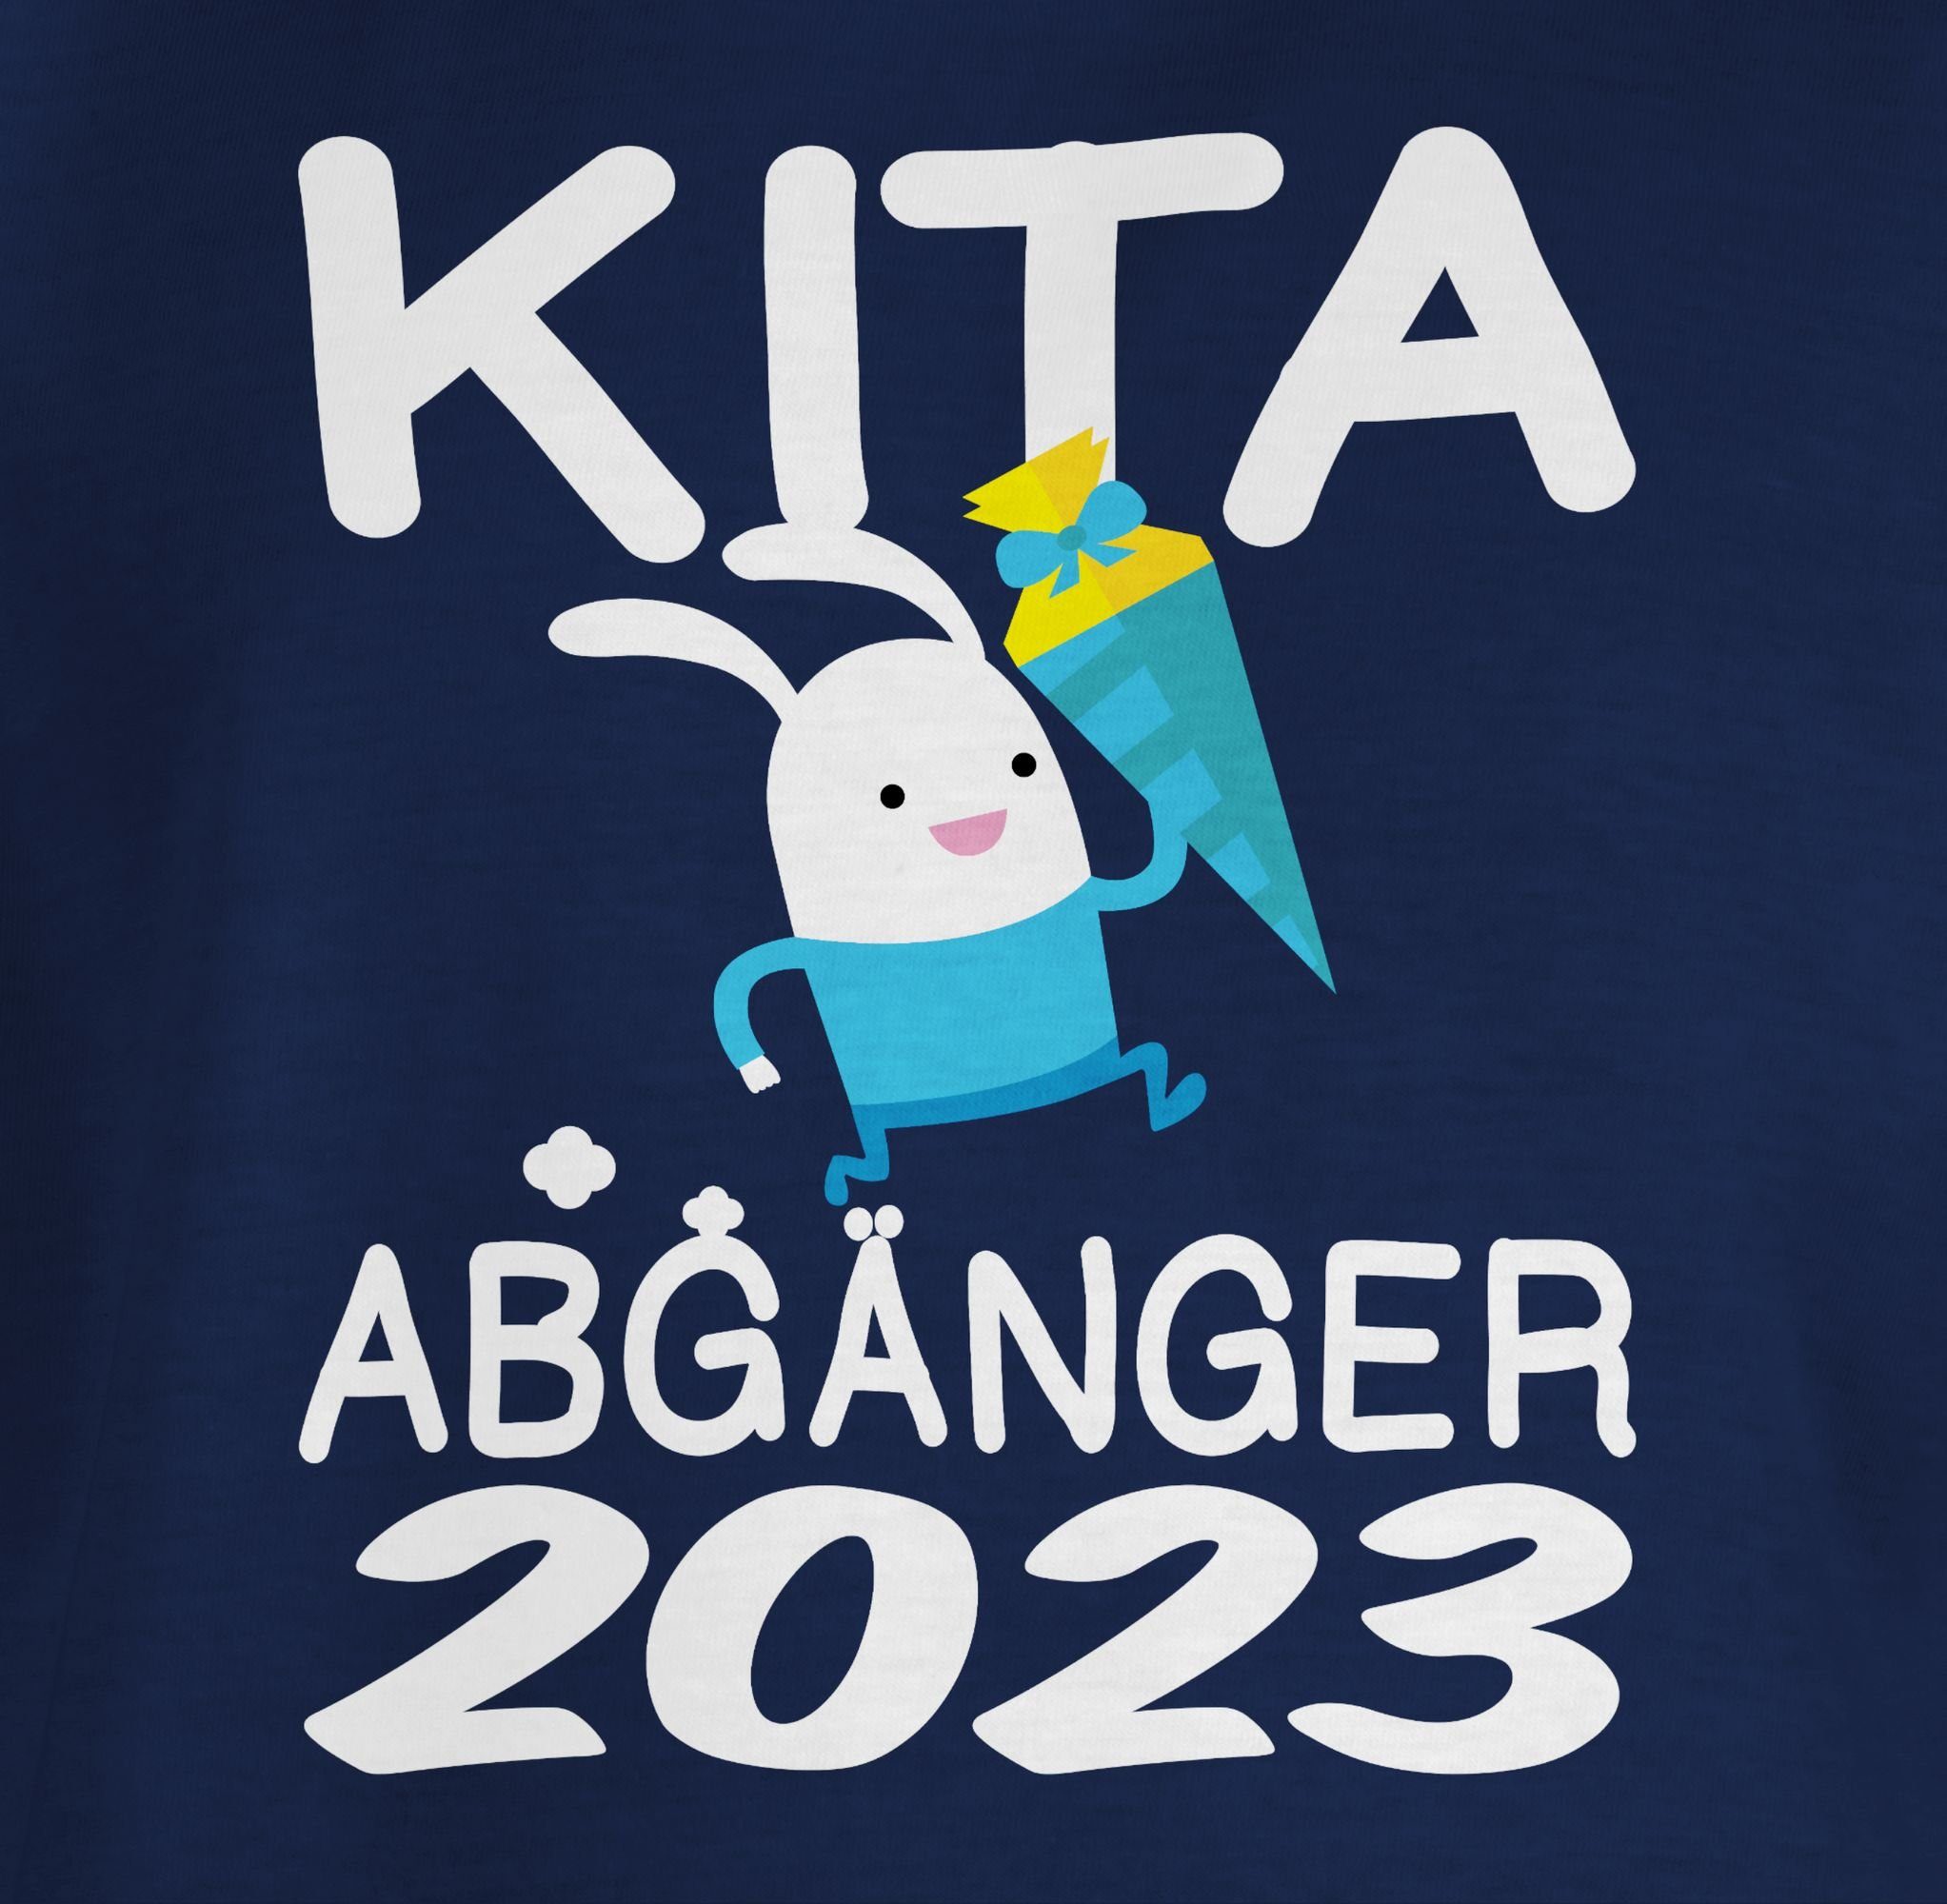 Kita 2023 Einschulung Hase Blau T-Shirt mit Geschenke Navy Abgänger rennender Schultüte Junge Schulanfang 1 Shirtracer